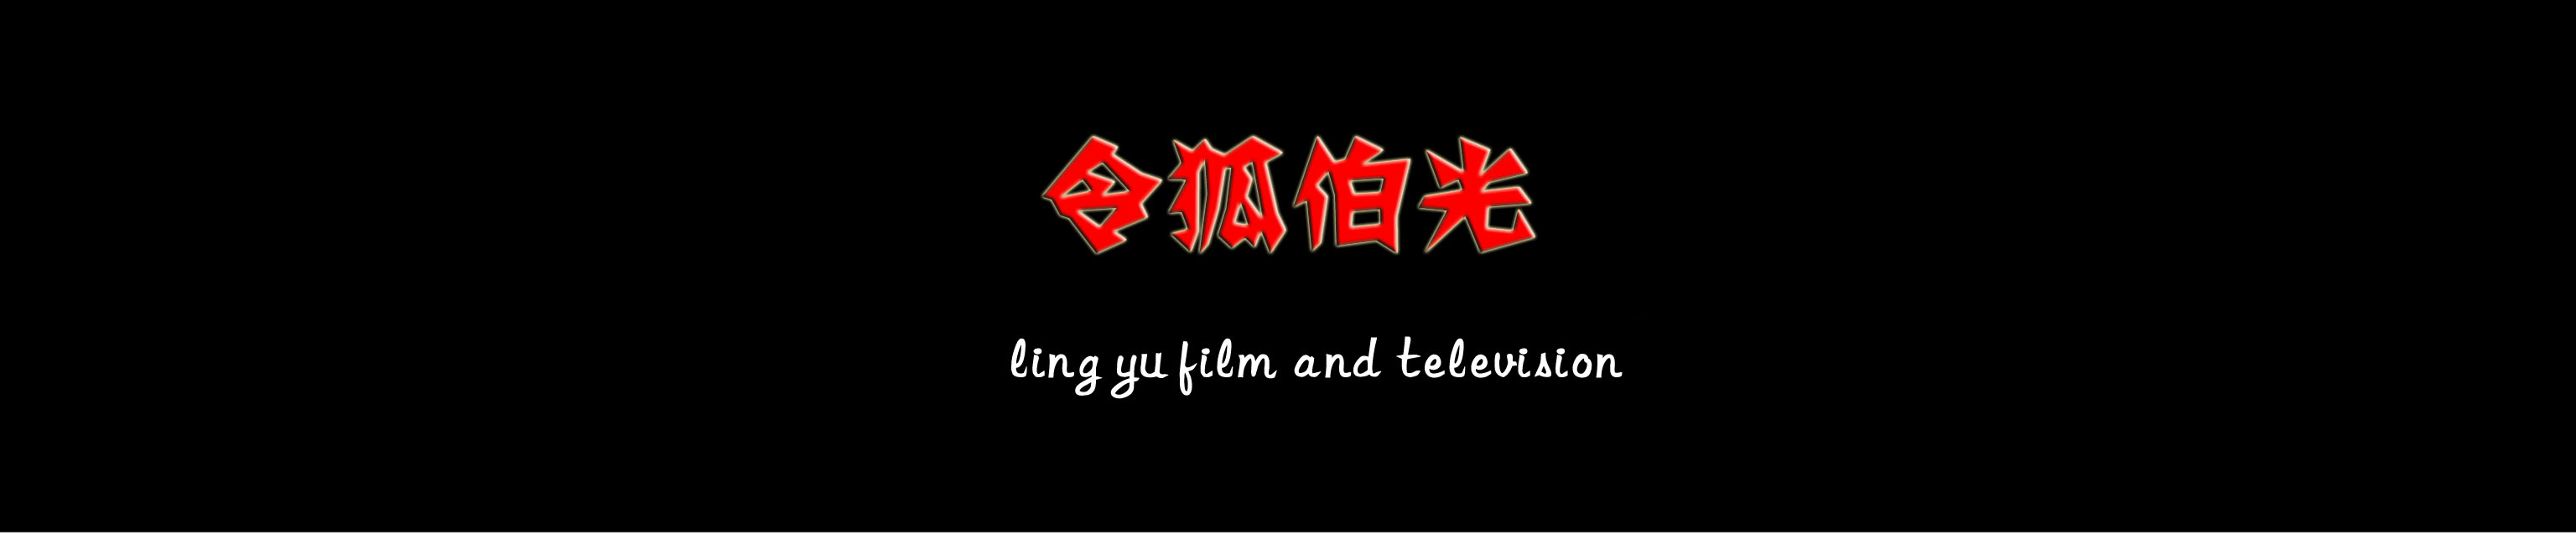 上海堡垒电影剧情概括800字「分析」
